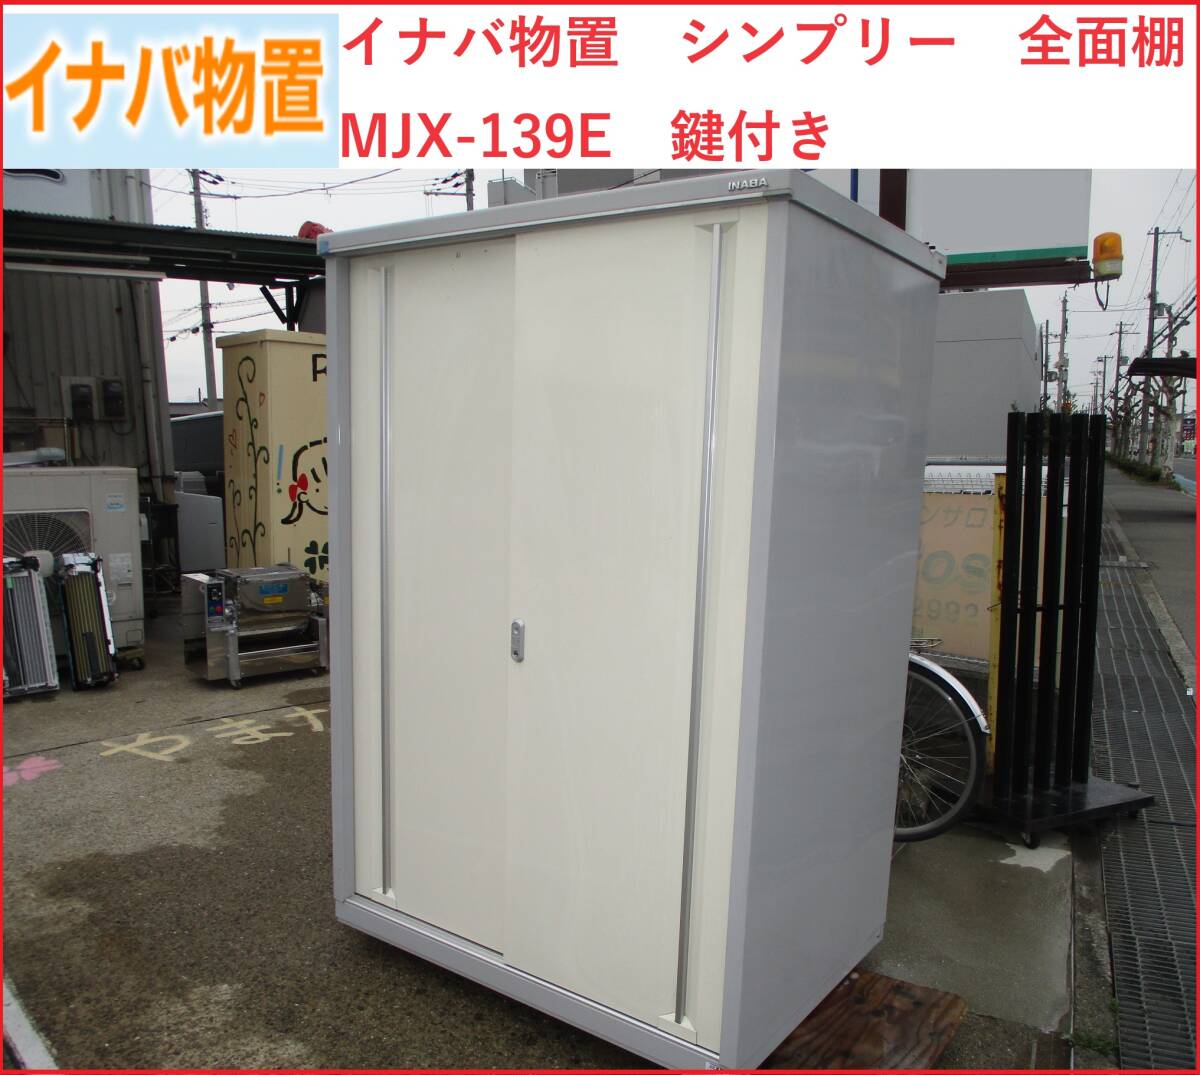  прекрасный товар Himeji Inaba место хранения 1320 ×905 ×1903sin шкив все полки MJX-139E ключ имеется самовывоз ограничение 